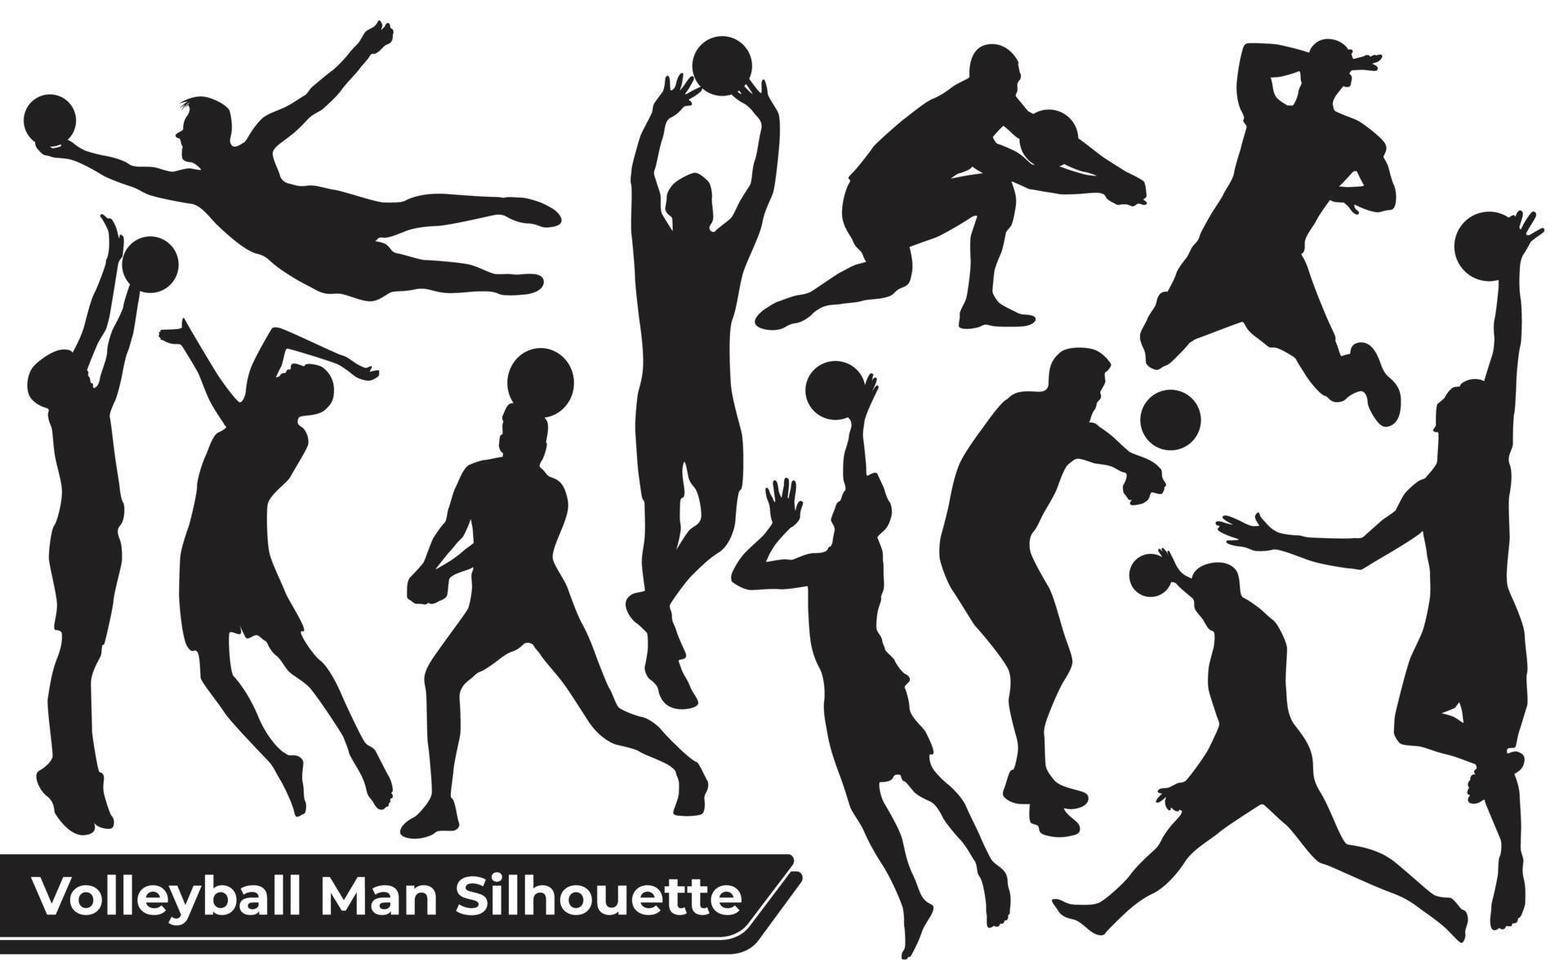 Colección de siluetas de hombre de jugador de voleibol en diferentes poses vector